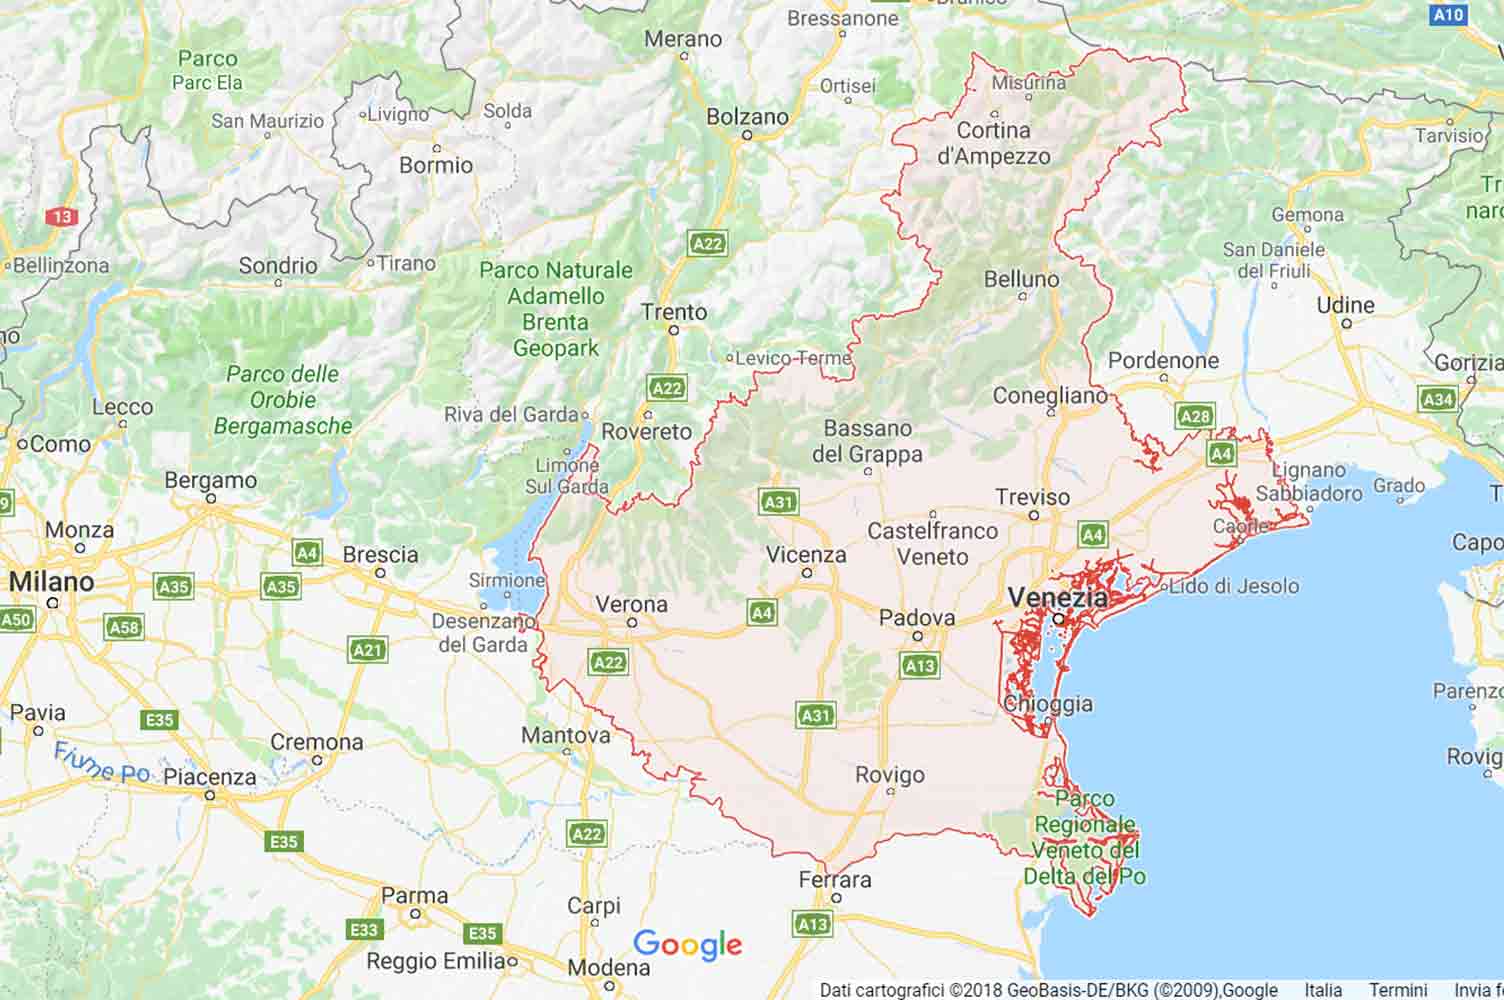 Veneto - Verona - Isola Rizza Preventivi Veloci google maps